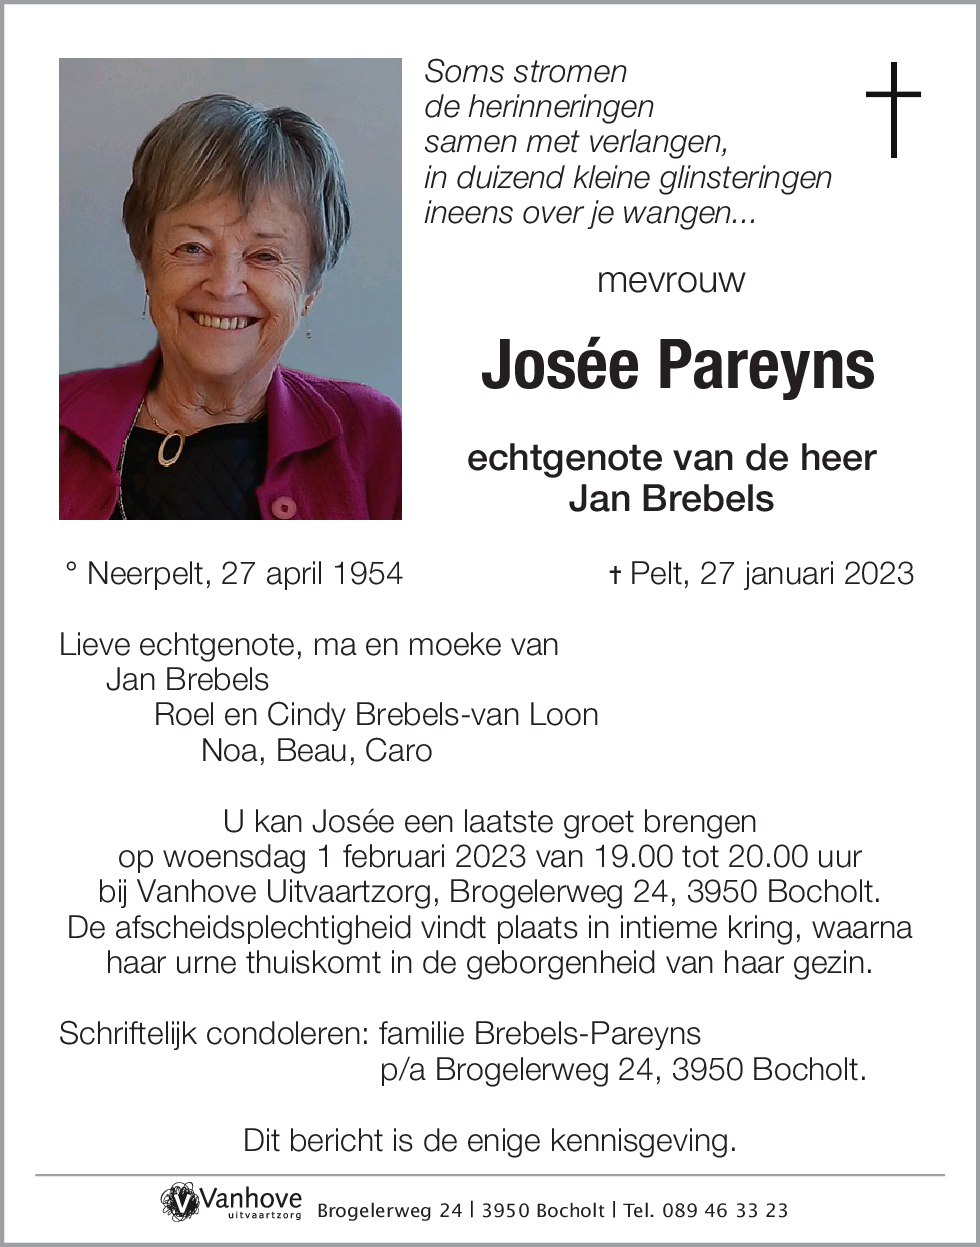 Josée Pareyns